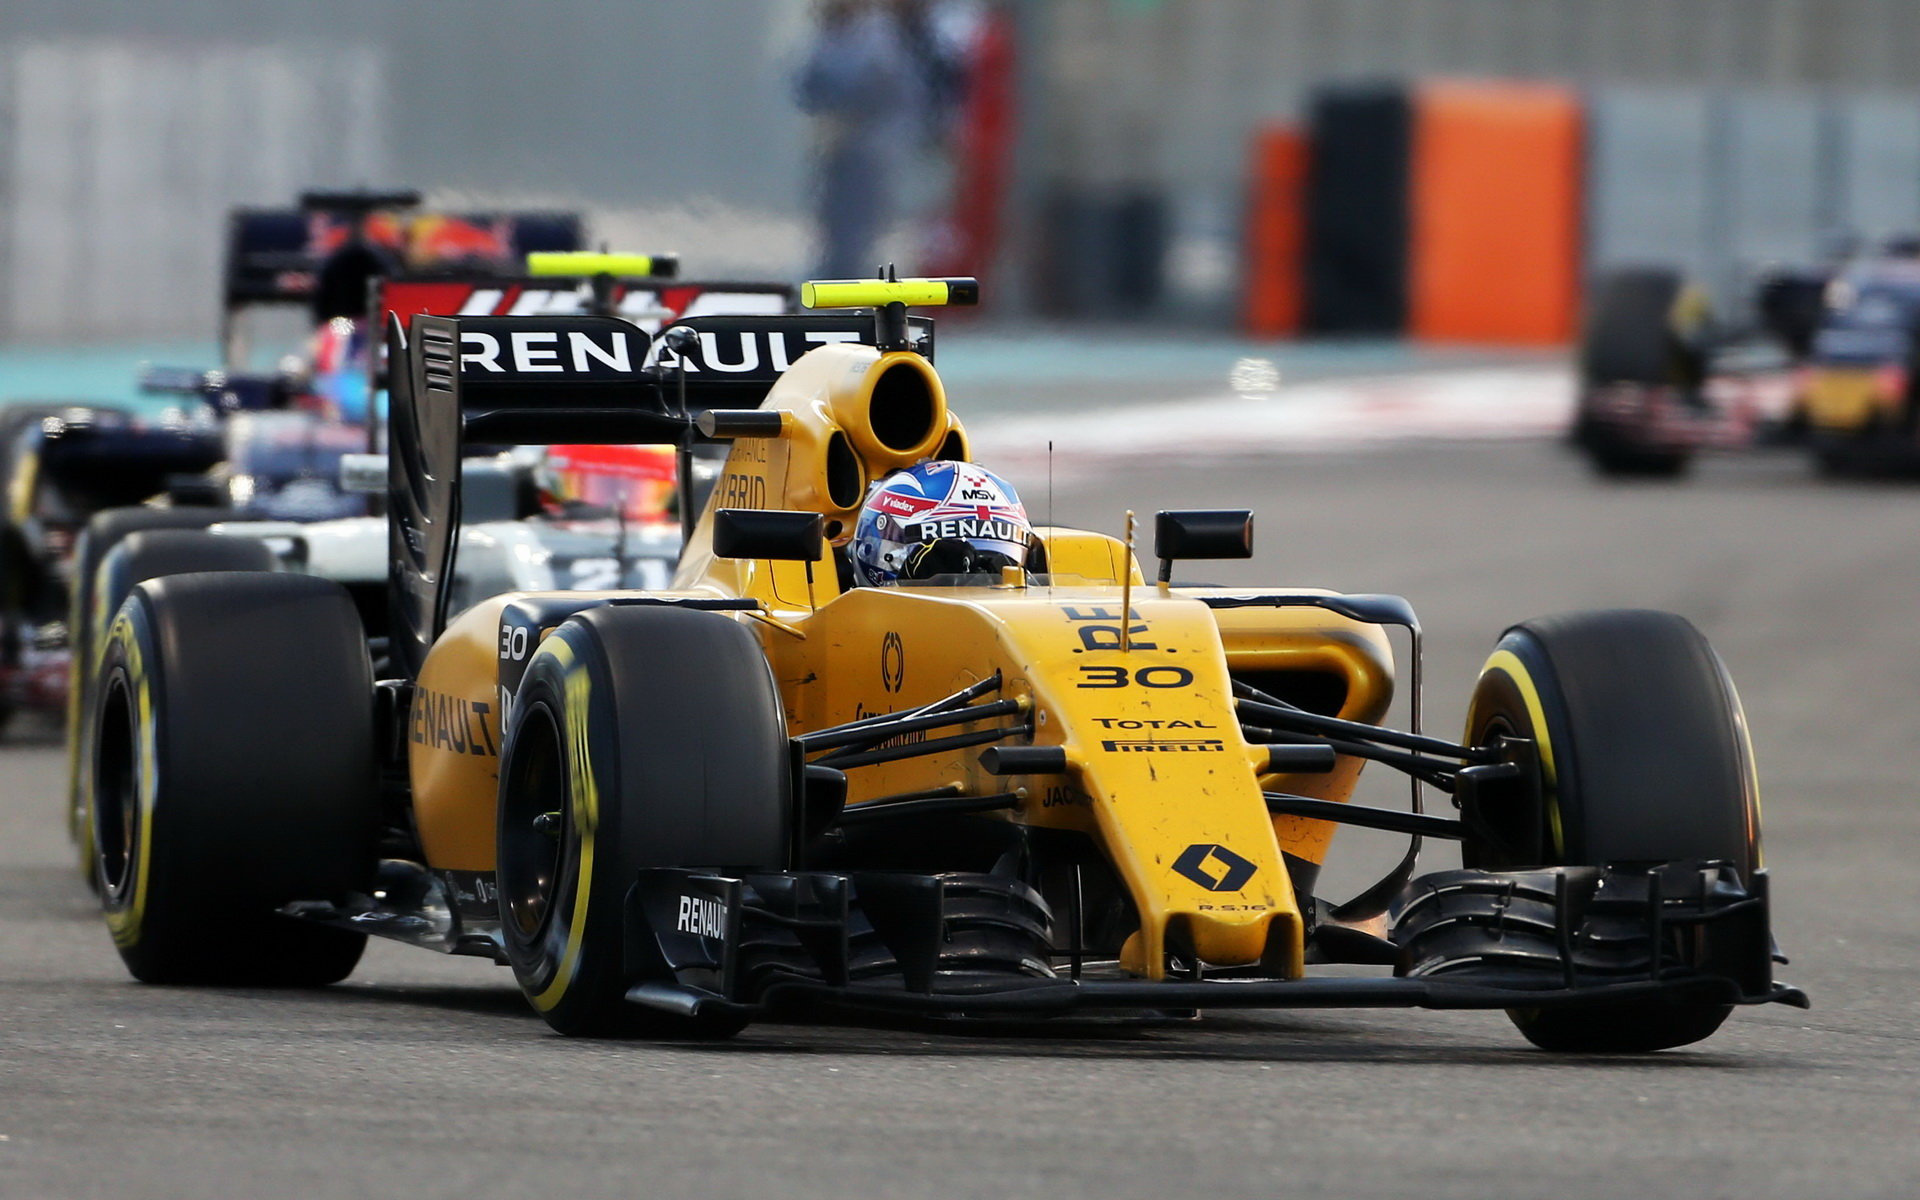 Bude dodavatel Total u Renaultu nahrazen společností BP?